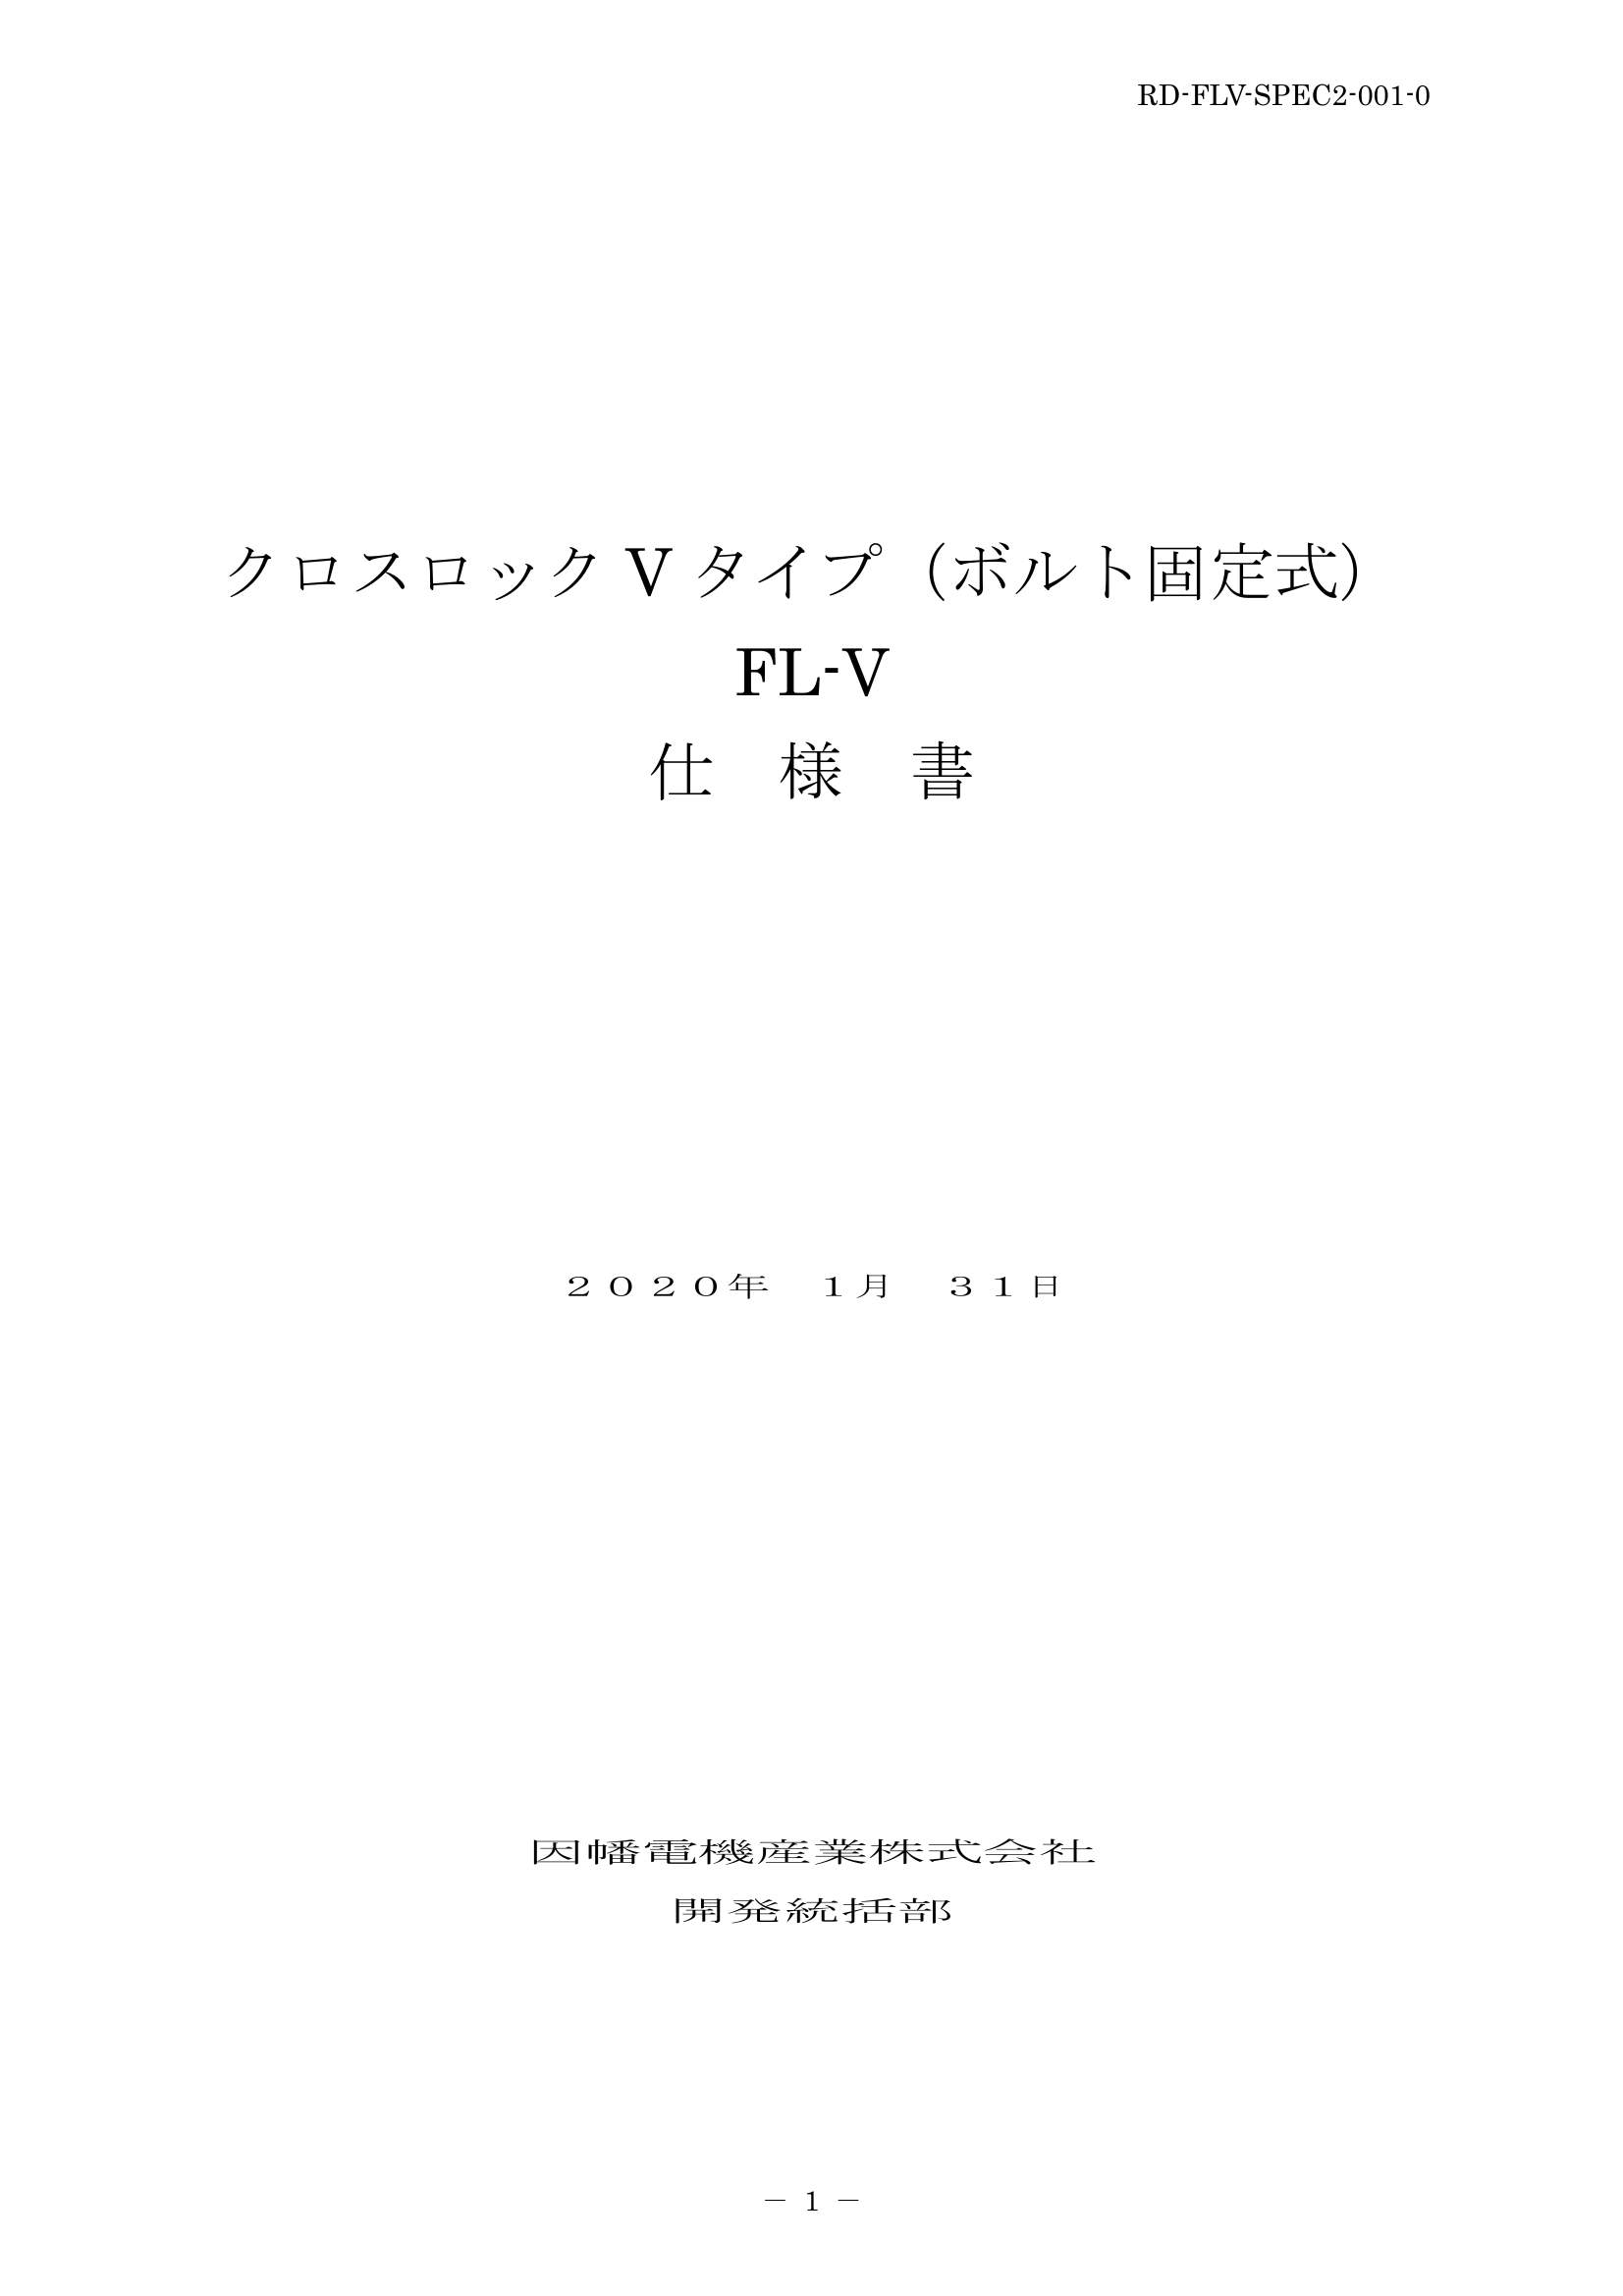 FL-V_仕様書_20200131.pdf